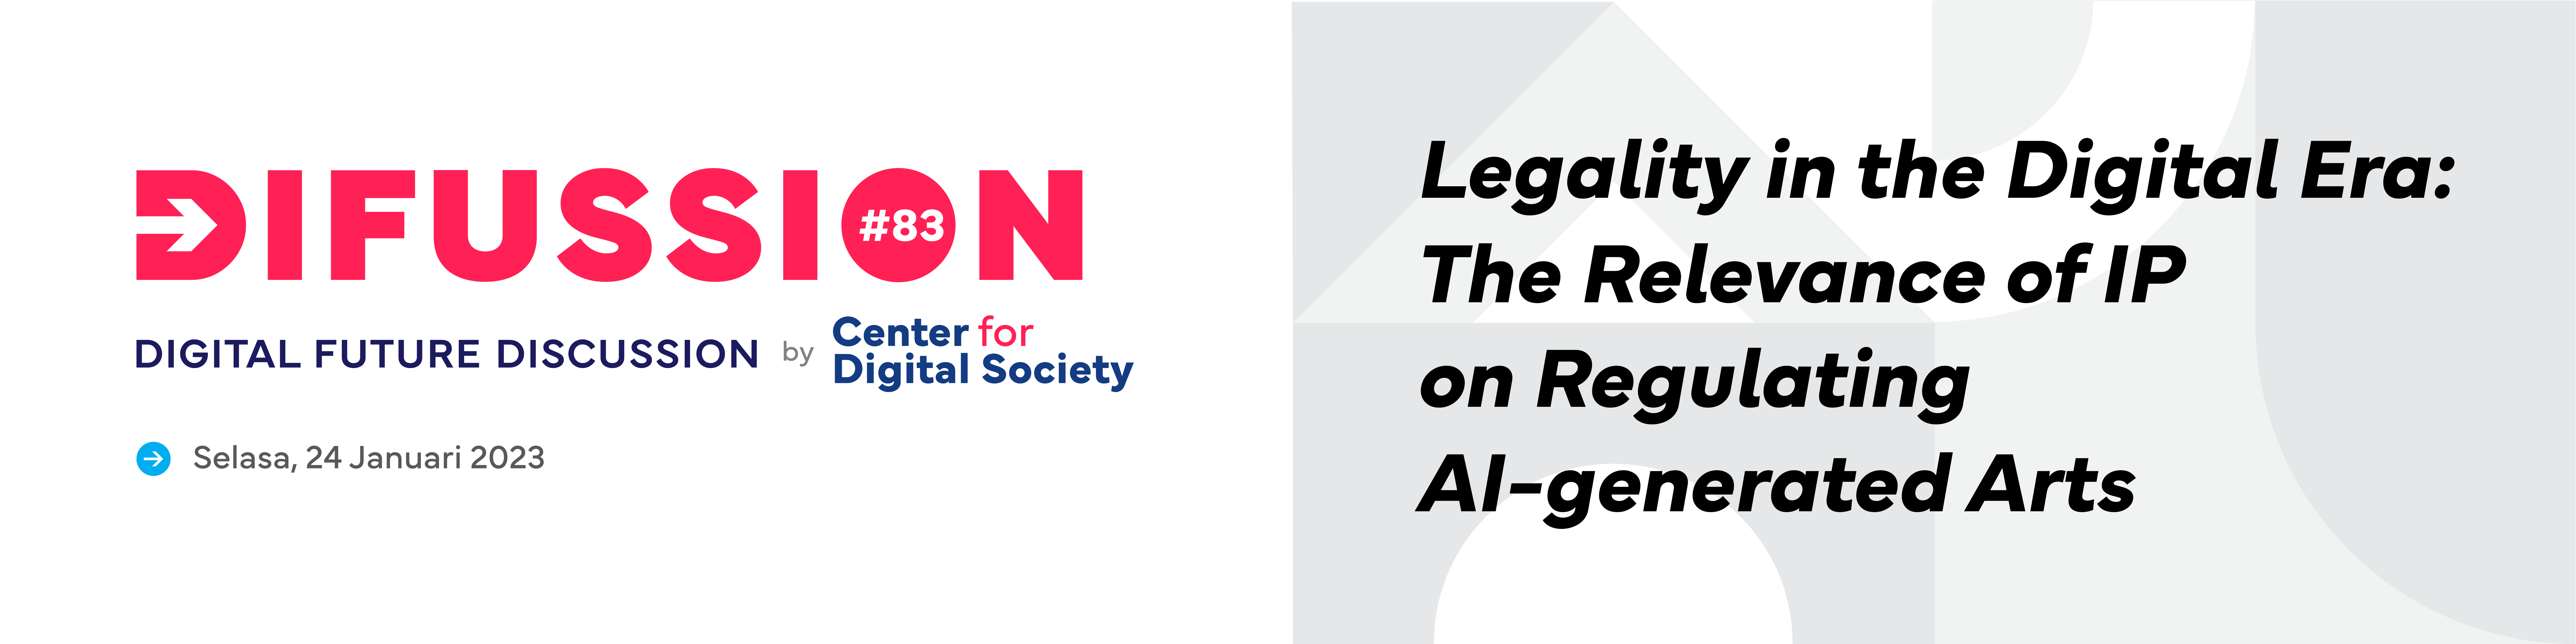 [PRESS RELEASE] Legalitas di Era Digital: Relevansi KI dalam Mengatur Kesenian yang Dihasilkan AI | Difussion #83